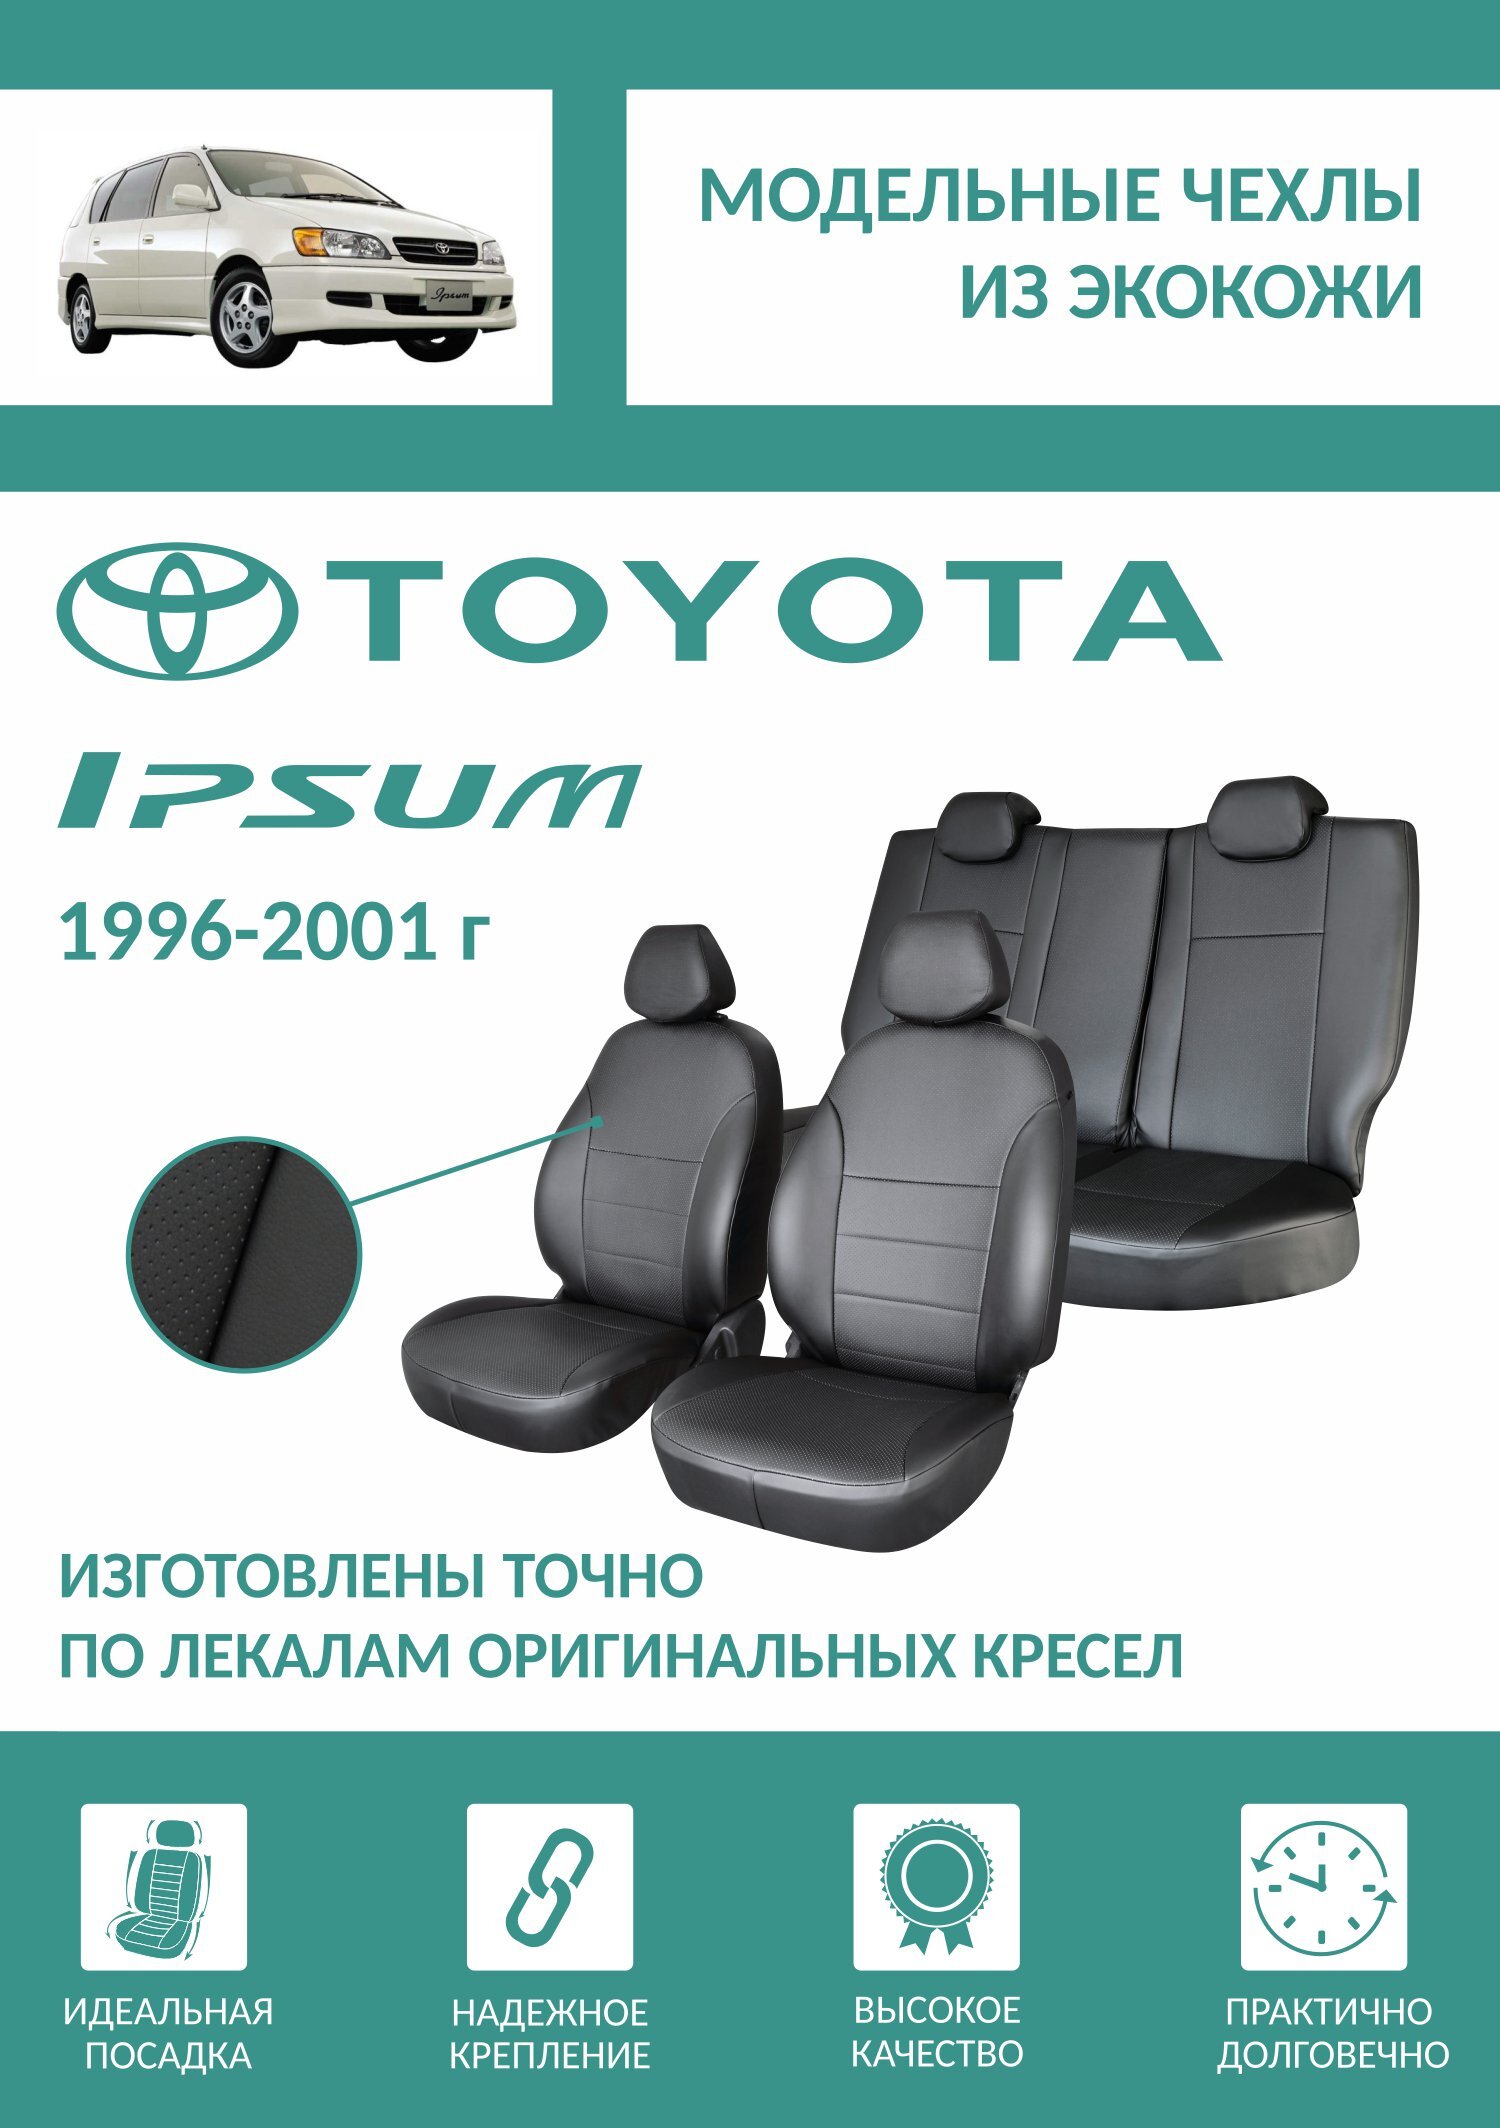 internat-mednogorsk.ru - Подлокотник Toyota Ipsum (Тойота Ипсум), купить, цены и фото